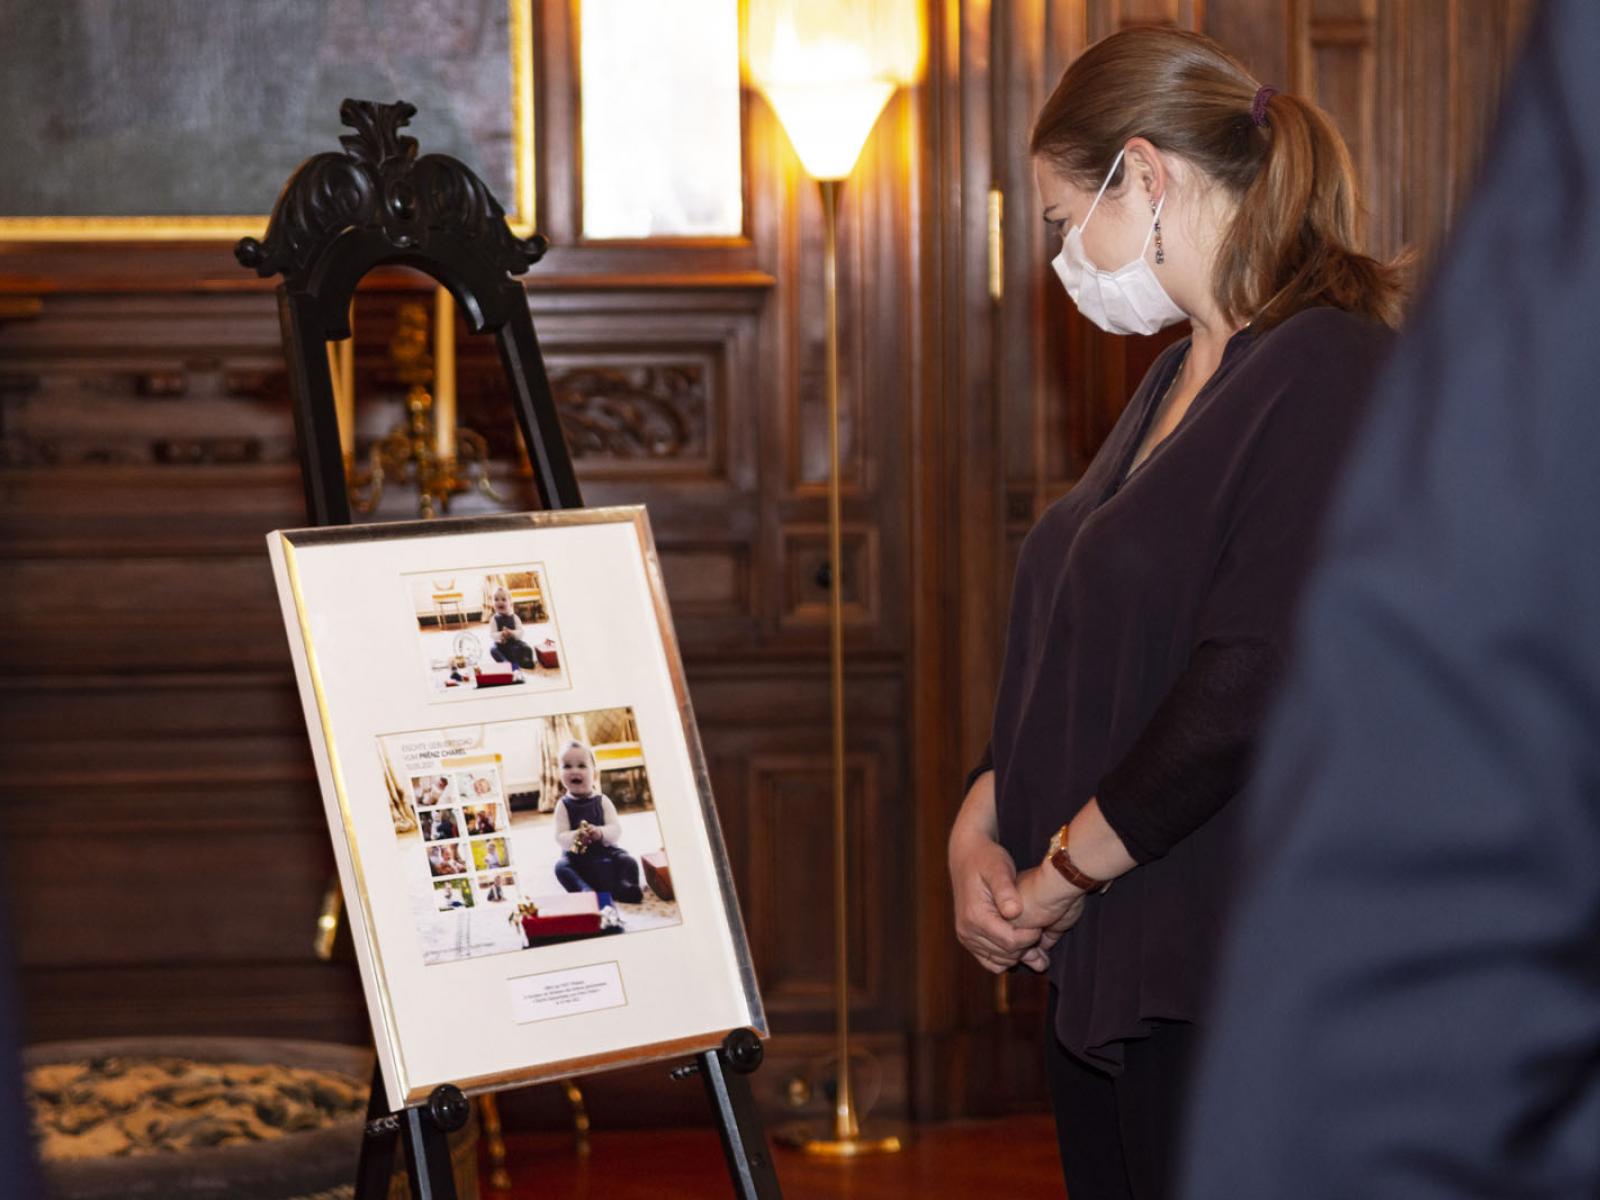 La Princesse Stéphanie examine le cadre le cadre souvenir "Premier anniversaire du Prince Charles"